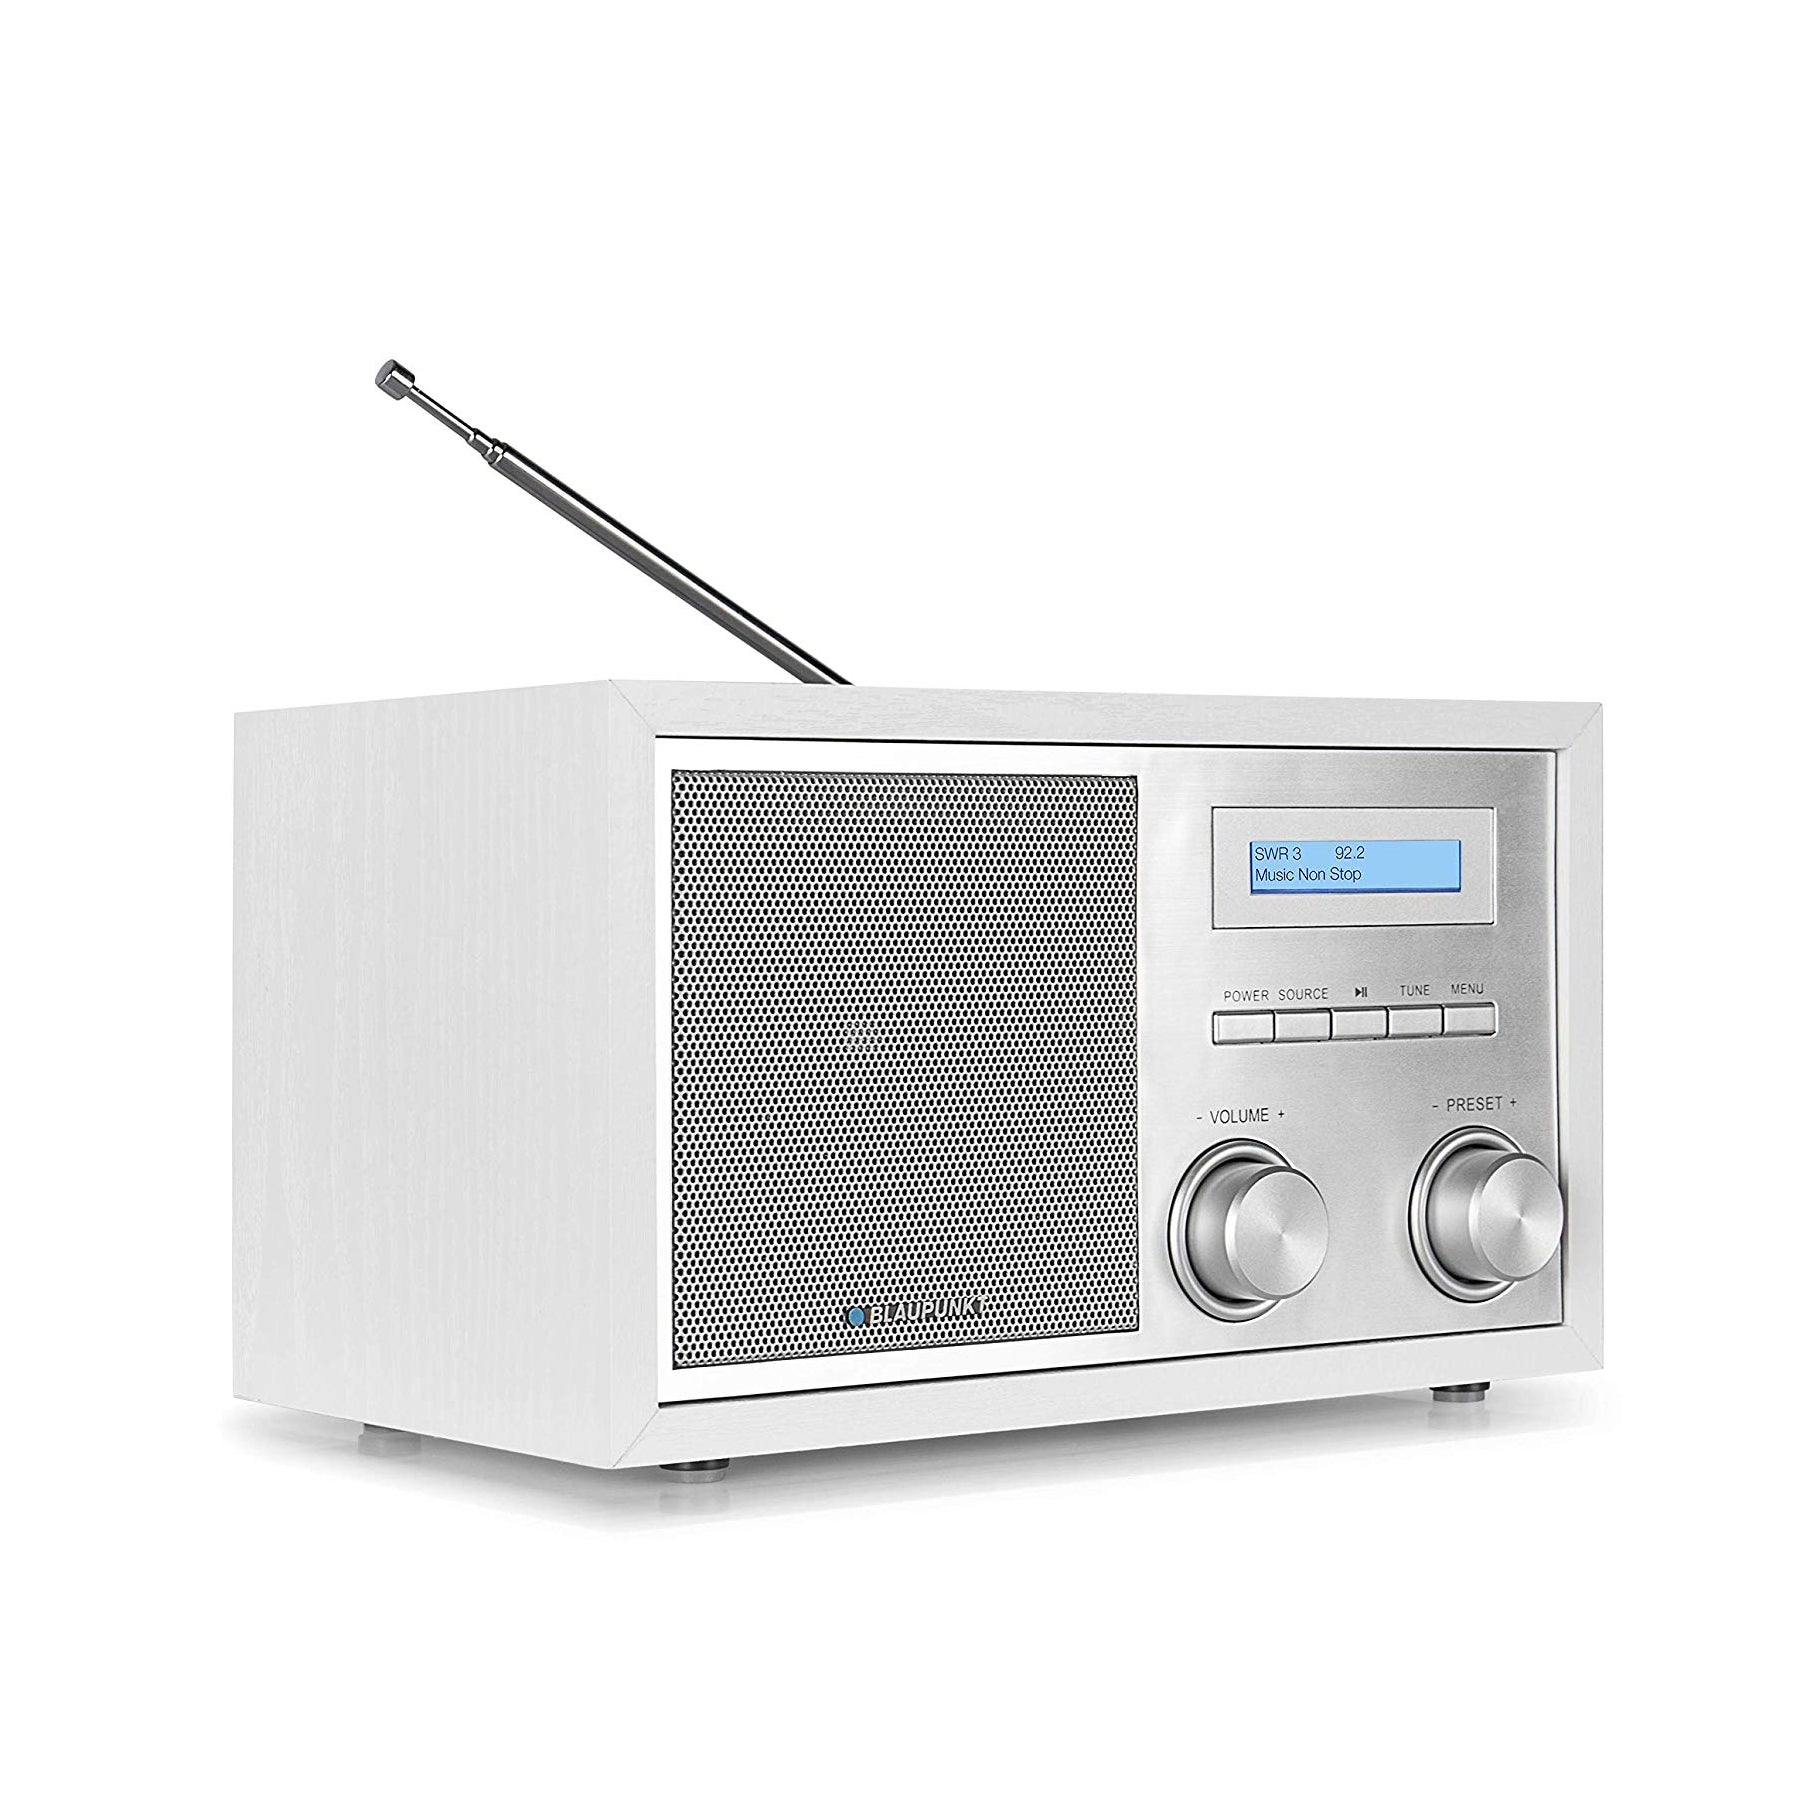 RXD B-Ware mit Weiß/Silber DAB+| 180 RDS Tuner, BLAUPUNKT Tuner, Bluetooth, Nostalgieradio FM, PLL Retro-Radio, DAB+,